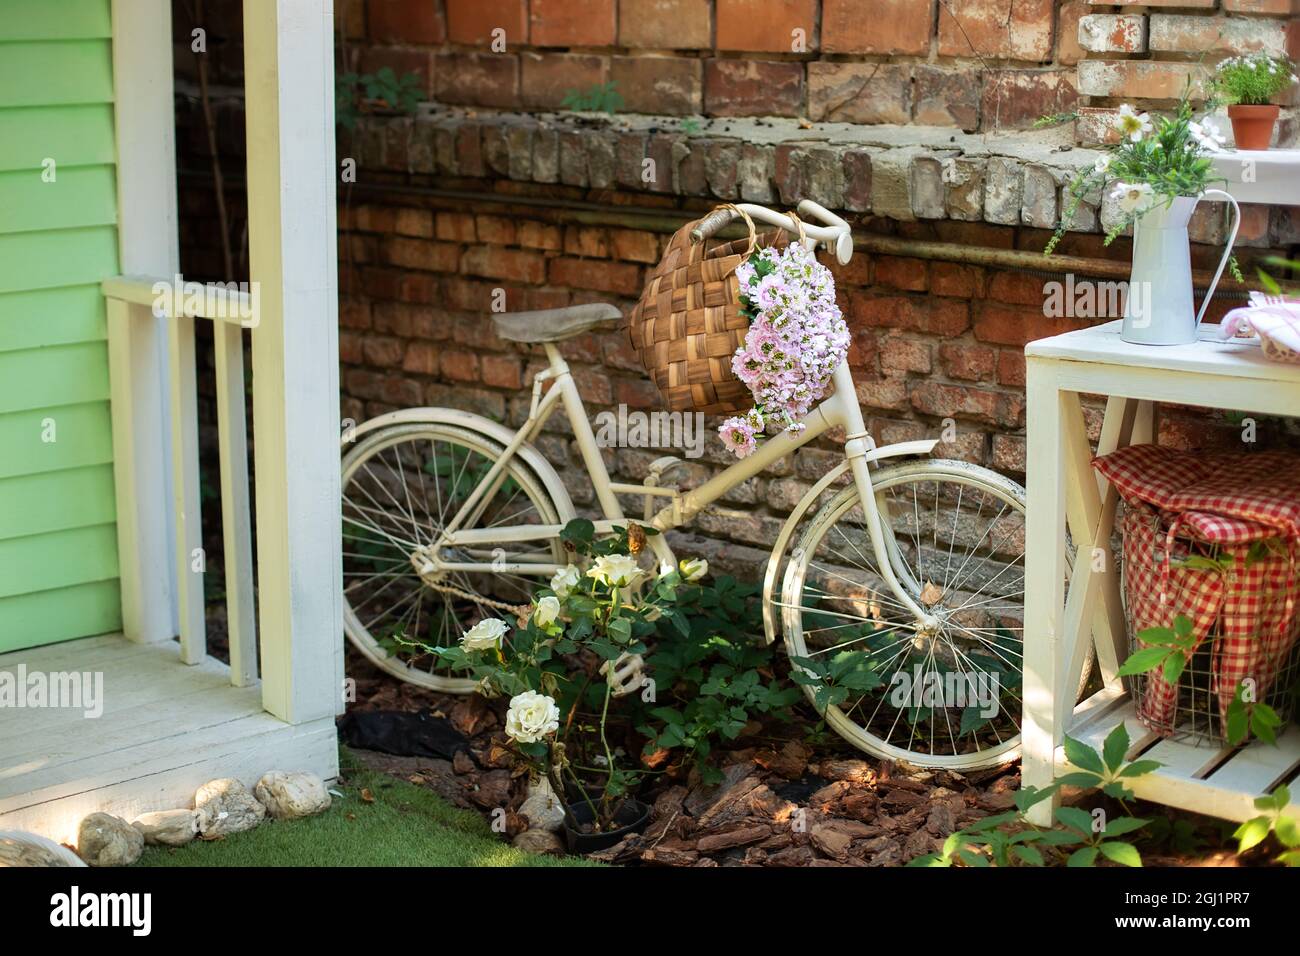 Altes Fahrrad, das im Garten gegen eine Ziegelmauer geparkt wurde. Garten mit Straßendekoration. Gartenecke im Herbst. Terrasse des Hauses mit Pflanzen und Fahrrad. Stockfoto